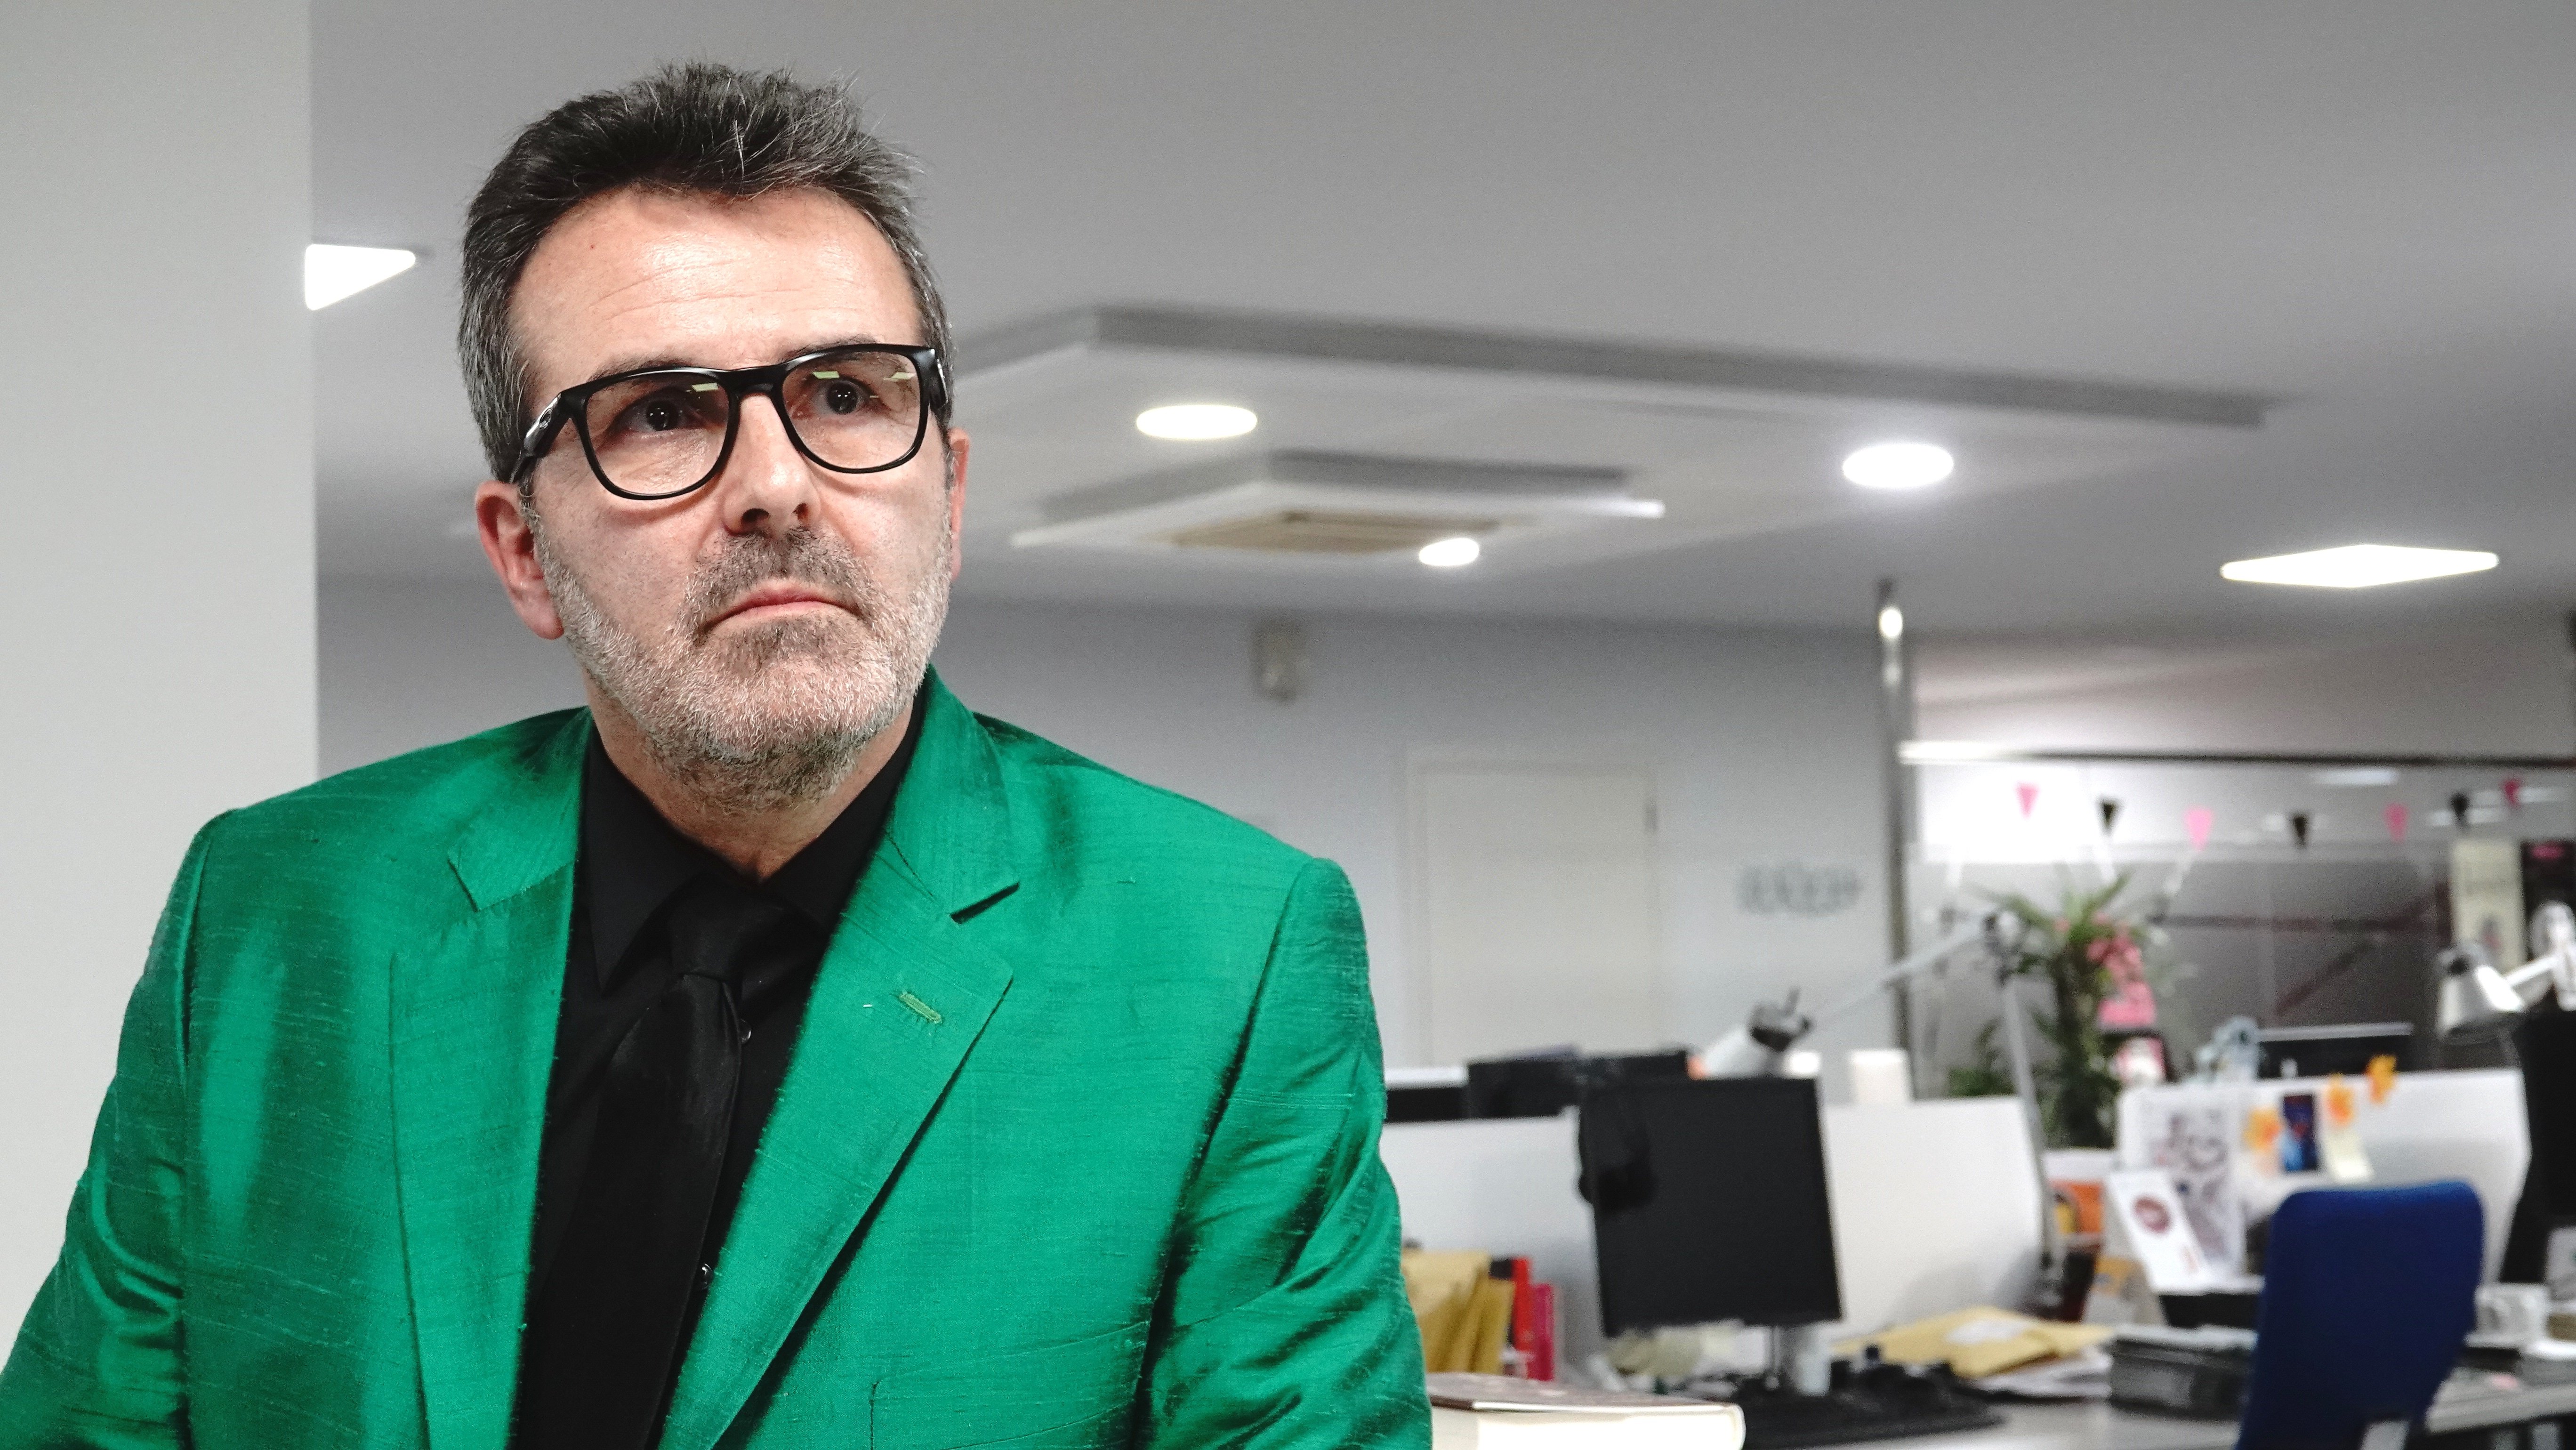 Sala-i-Martin explota contra Toni Freixa per l'atac contra Laporta al Twitter